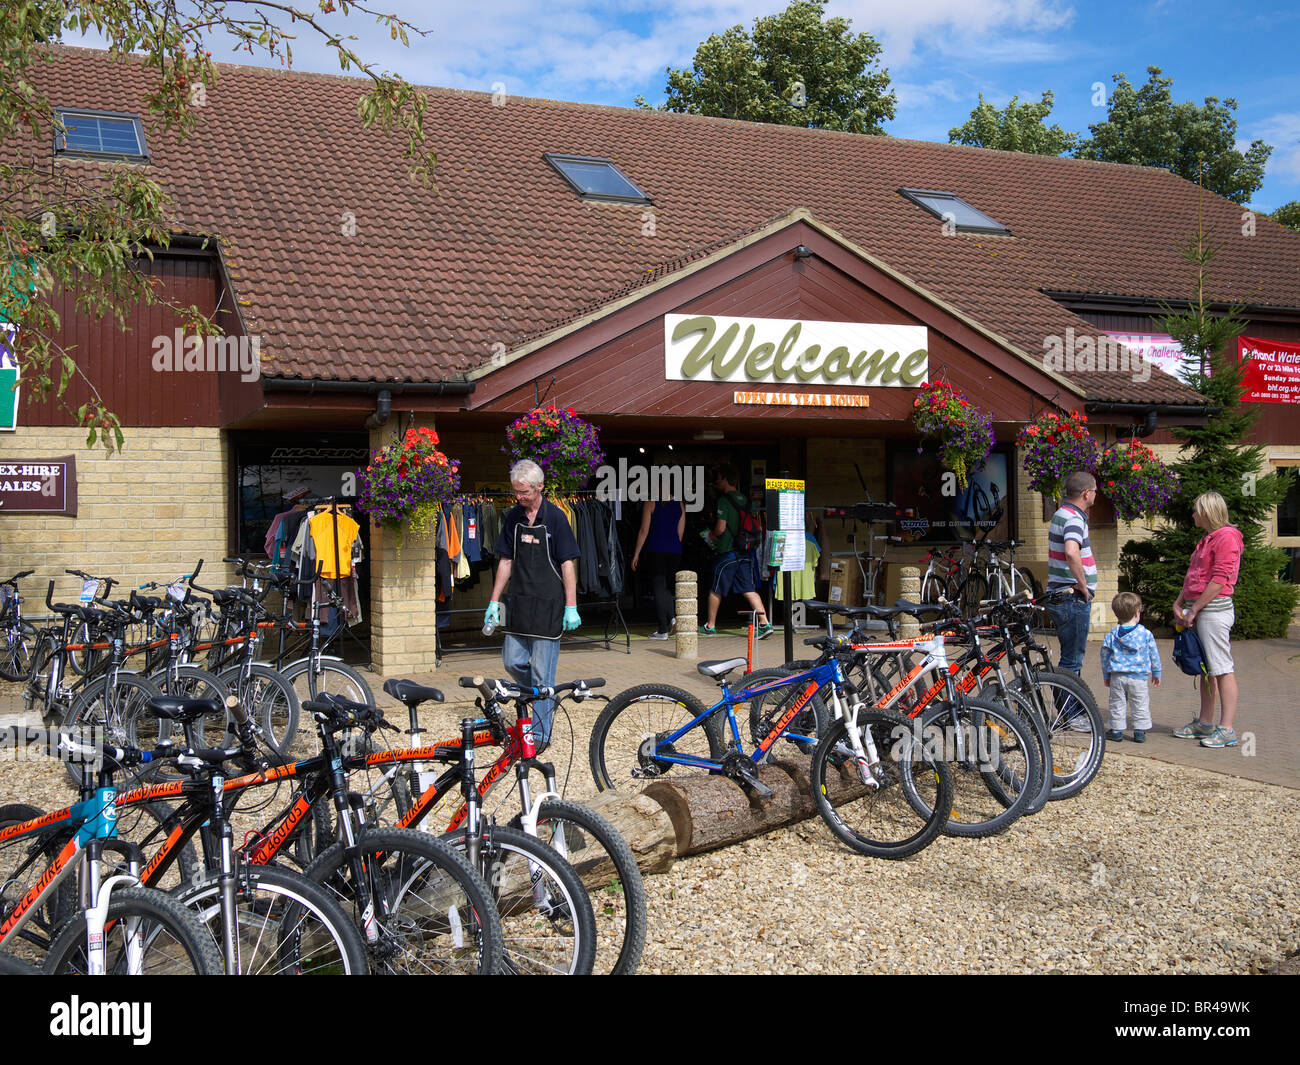 Centro visitatori e noleggio bici a Whitwell North Shore Rutland acqua England Regno Unito Foto Stock